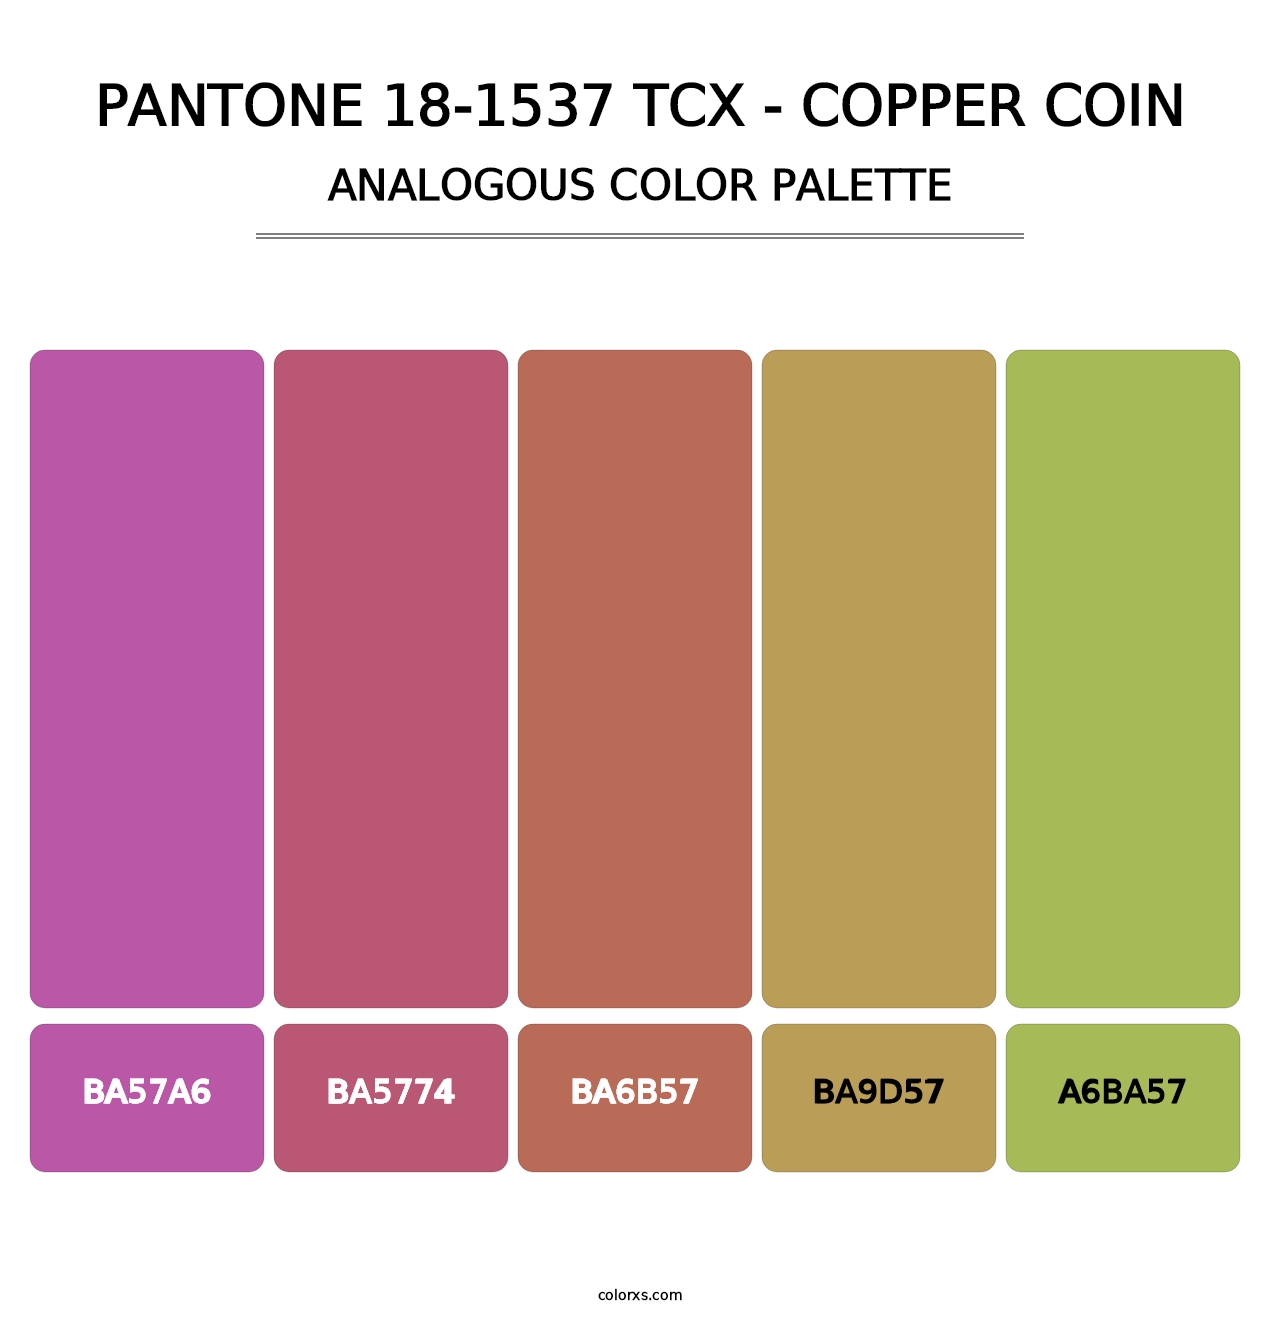 PANTONE 18-1537 TCX - Copper Coin - Analogous Color Palette